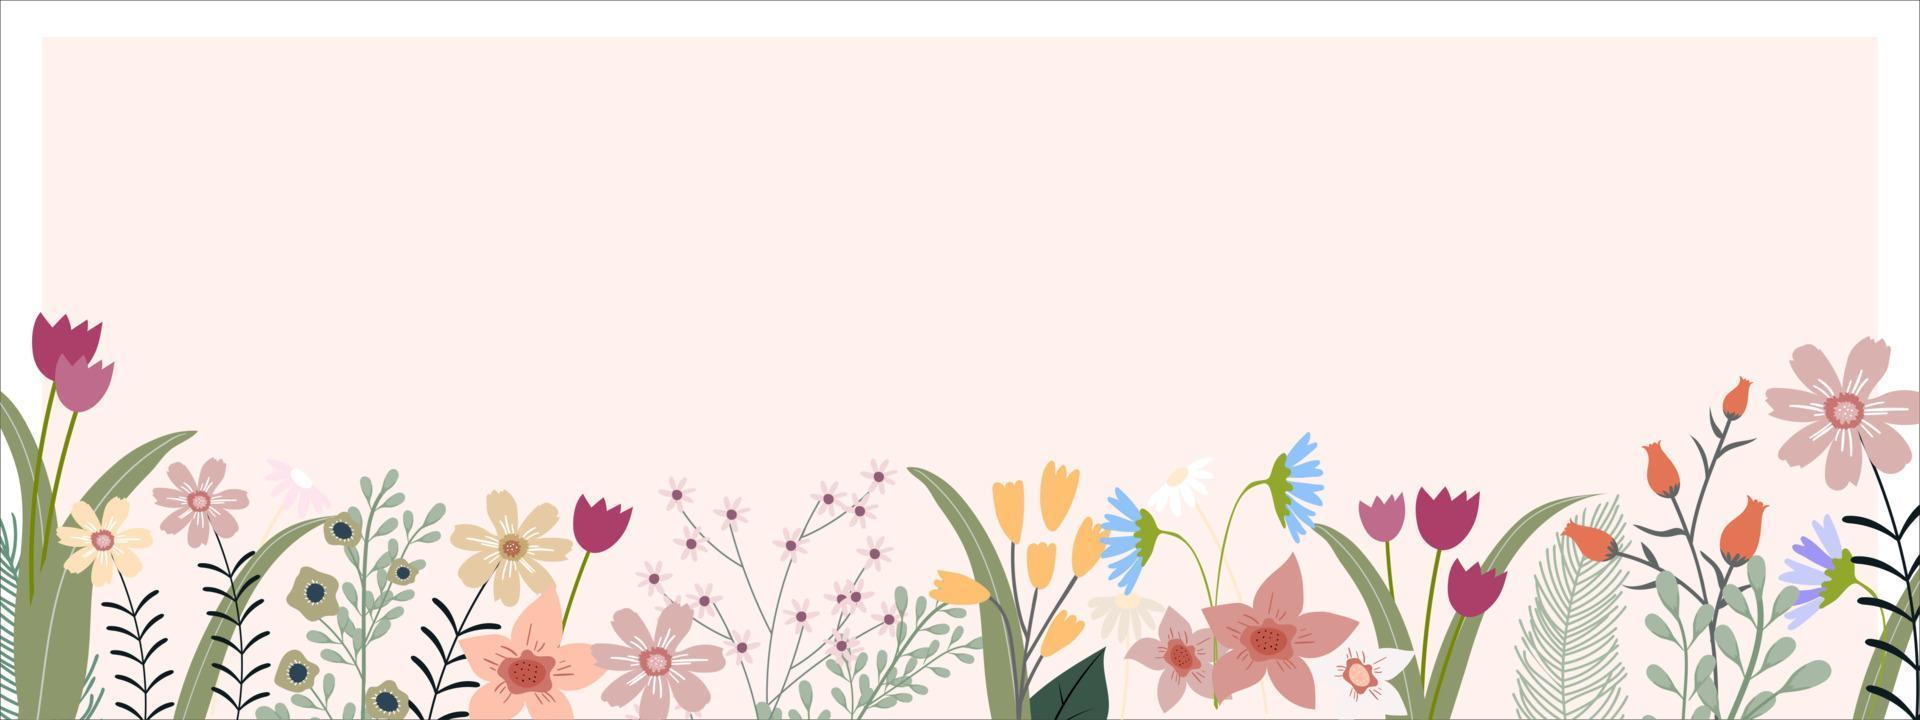 bannière de printemps avec des fleurs et des feuilles multicolores sur la bordure sur fond de pêche, toile de fond horizontale vectorielle d'un joli cadre de flore en fleurs, belle botanique pour la fête des mères ou la carte de vacances d'été vecteur